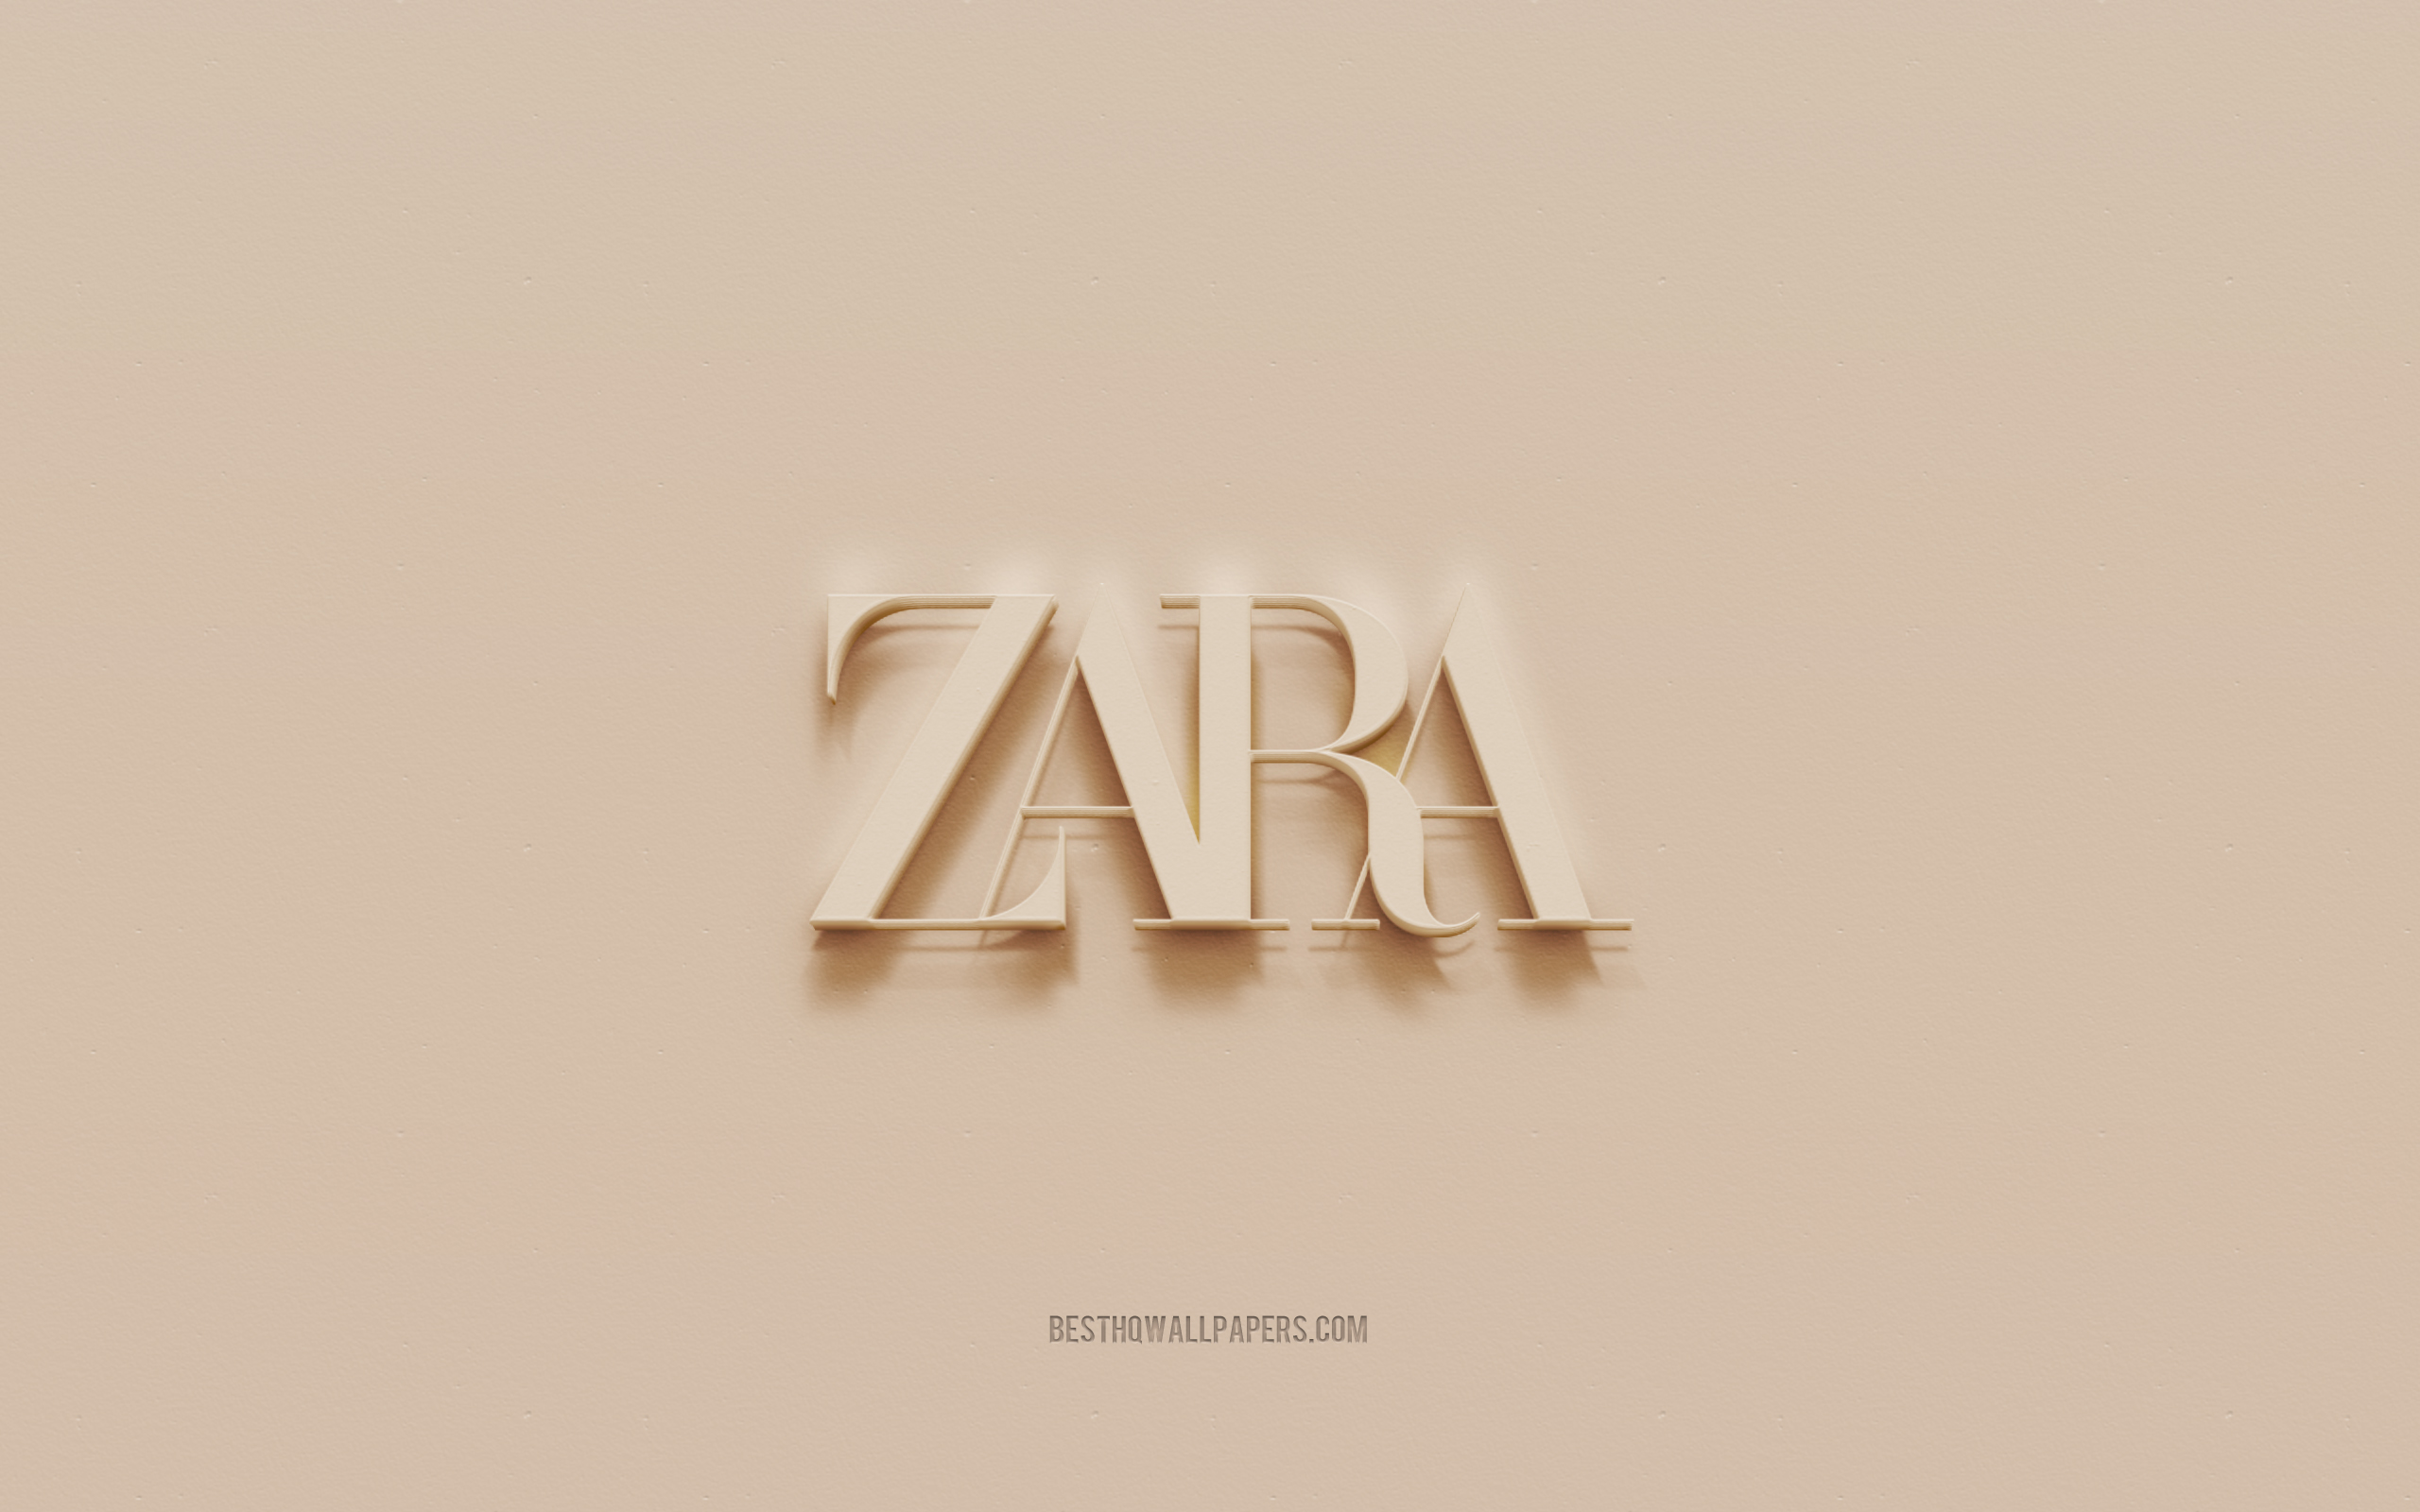 Zara Wallpapers